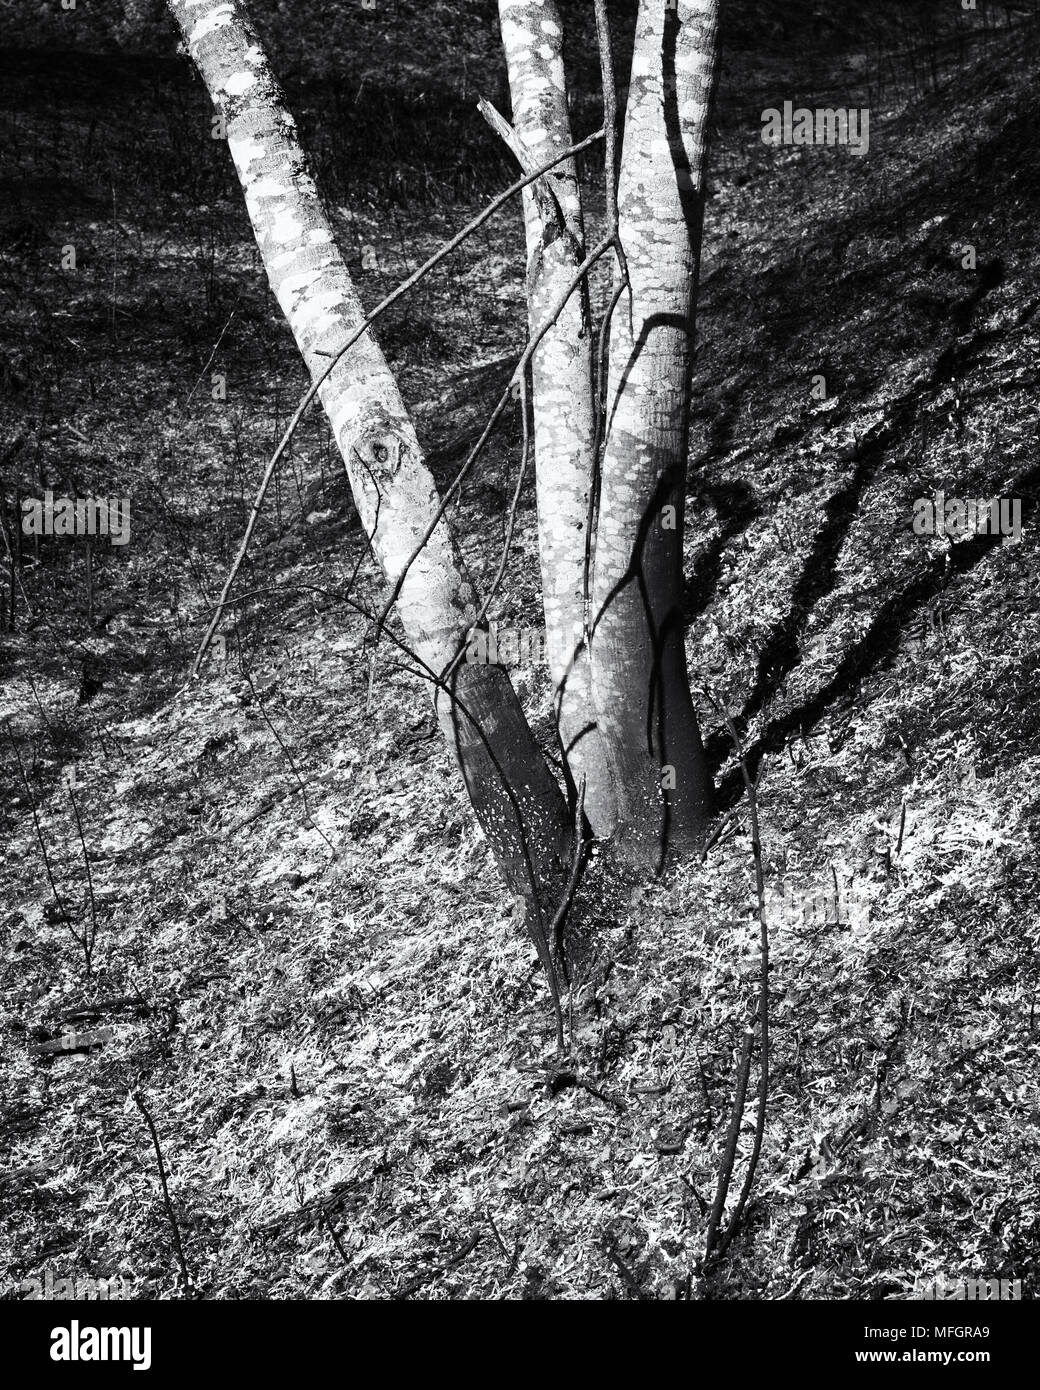 Vista in dettaglio della terra bruciata e giovani tronchi d'albero. Immagine in bianco e nero. Foto Stock